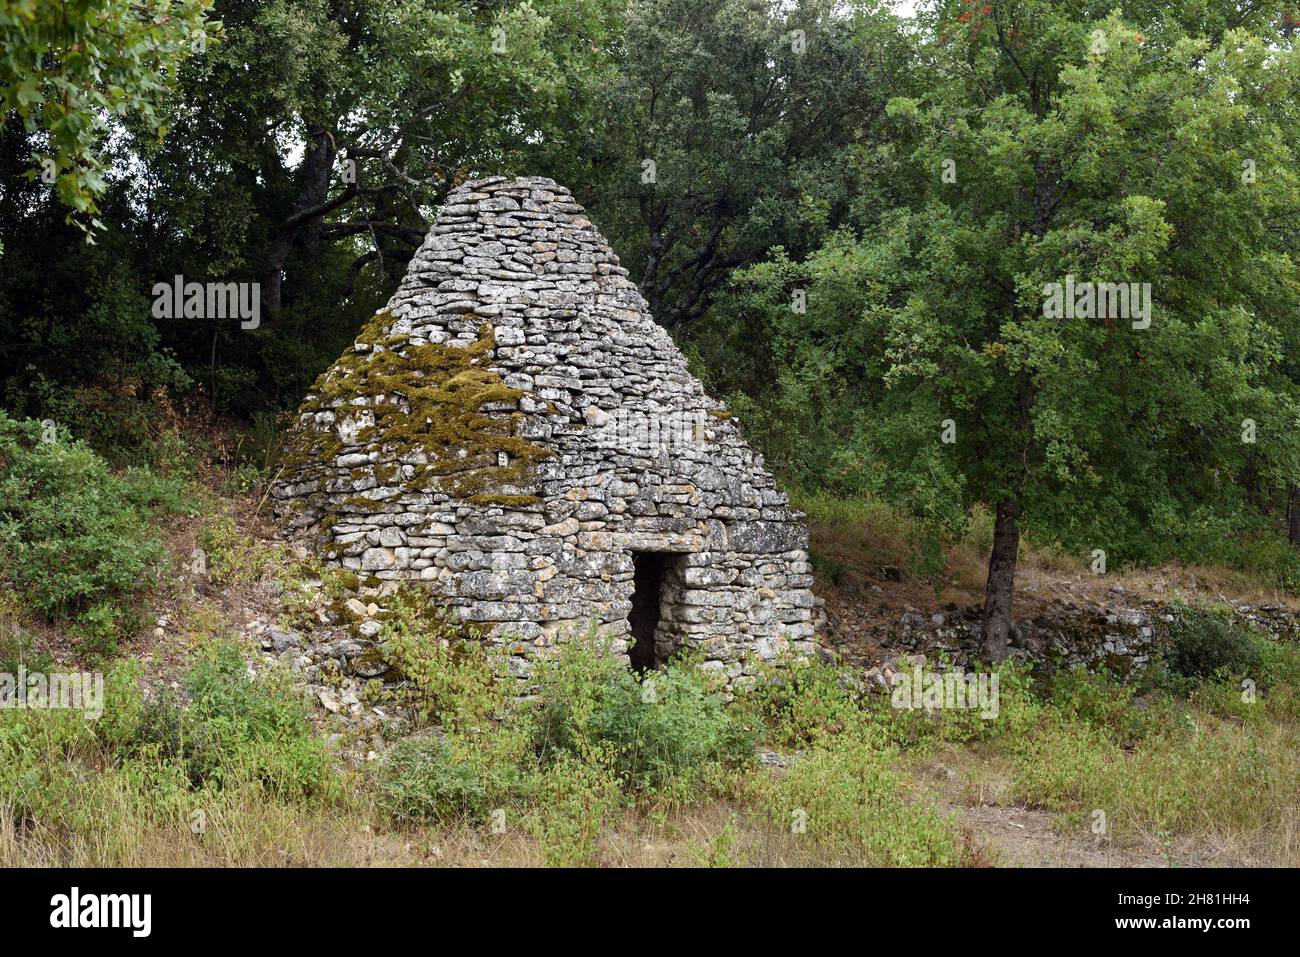 Cabaña tradicional de piedra seca conocida como Borie en el Parque Regional de Luberon Vaucluse Provence Francia Foto de stock